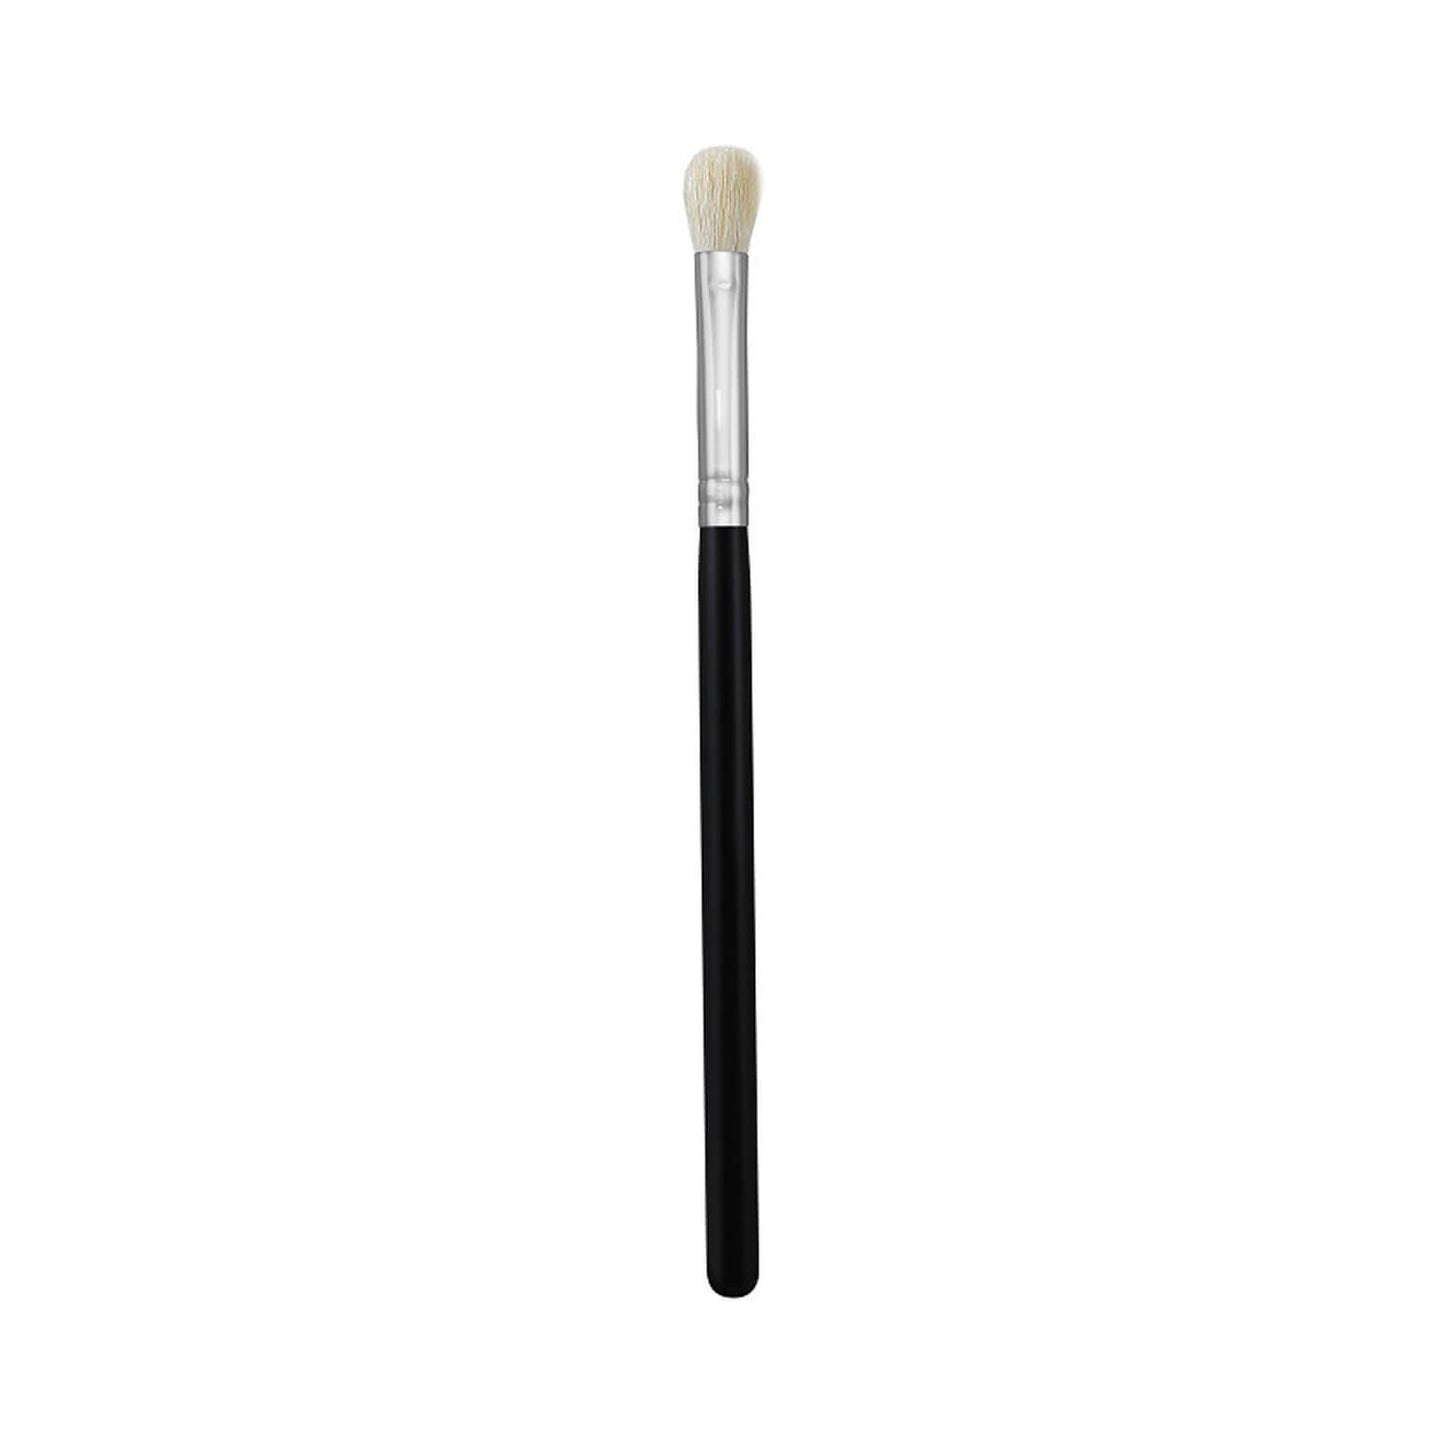 Morphe Cosmetics M433 Pro Firm Blending Fluff Brush